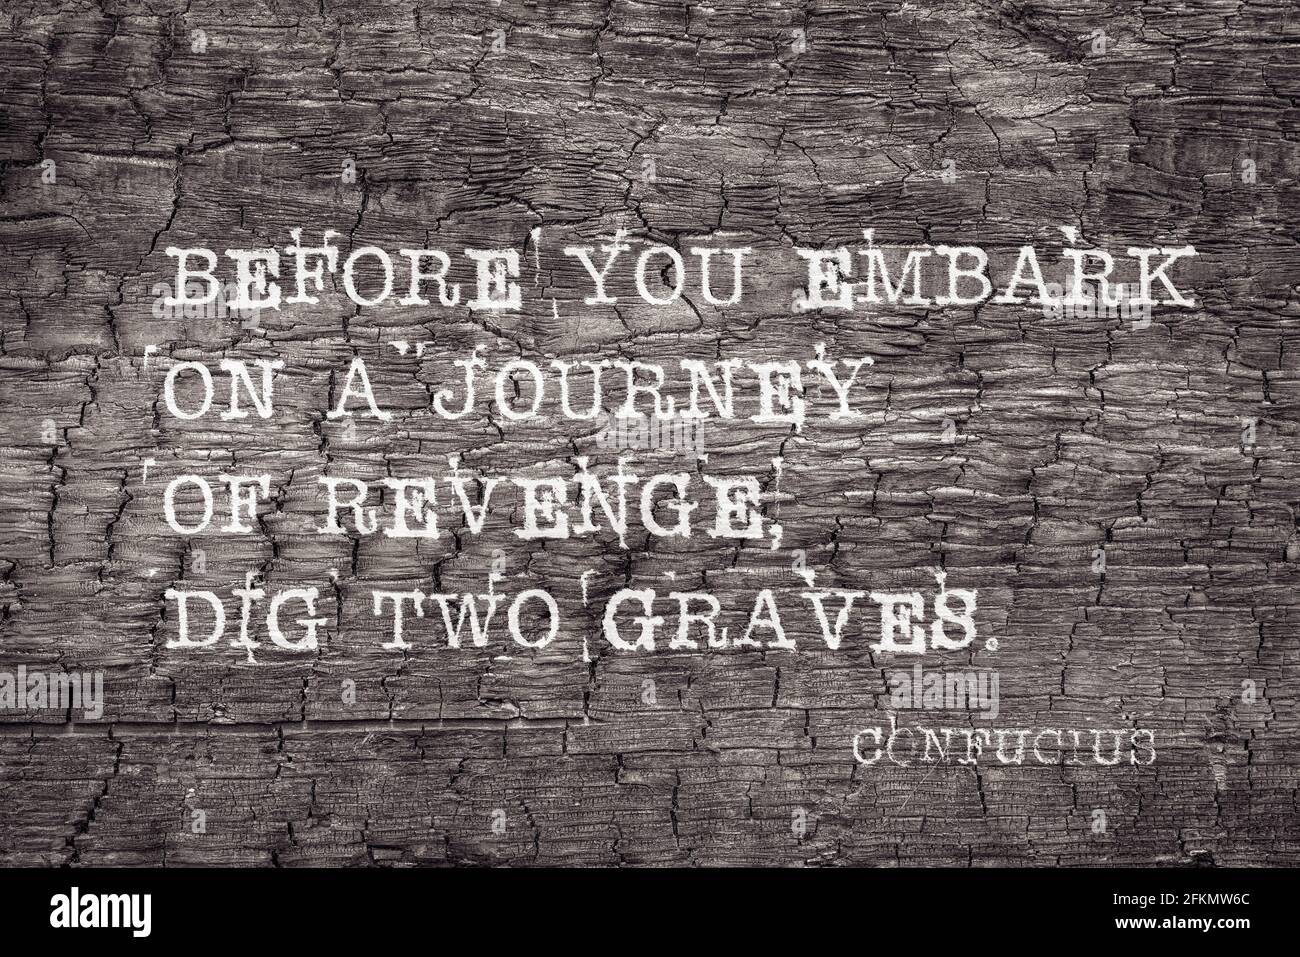 Bevor Sie sich auf eine Reise der Rache begeben, graben Sie zwei Gräber - ein altes Zitat des chinesischen Philosophen Konfuzius, das auf verbranntem Holzbrett gedruckt ist Stockfoto